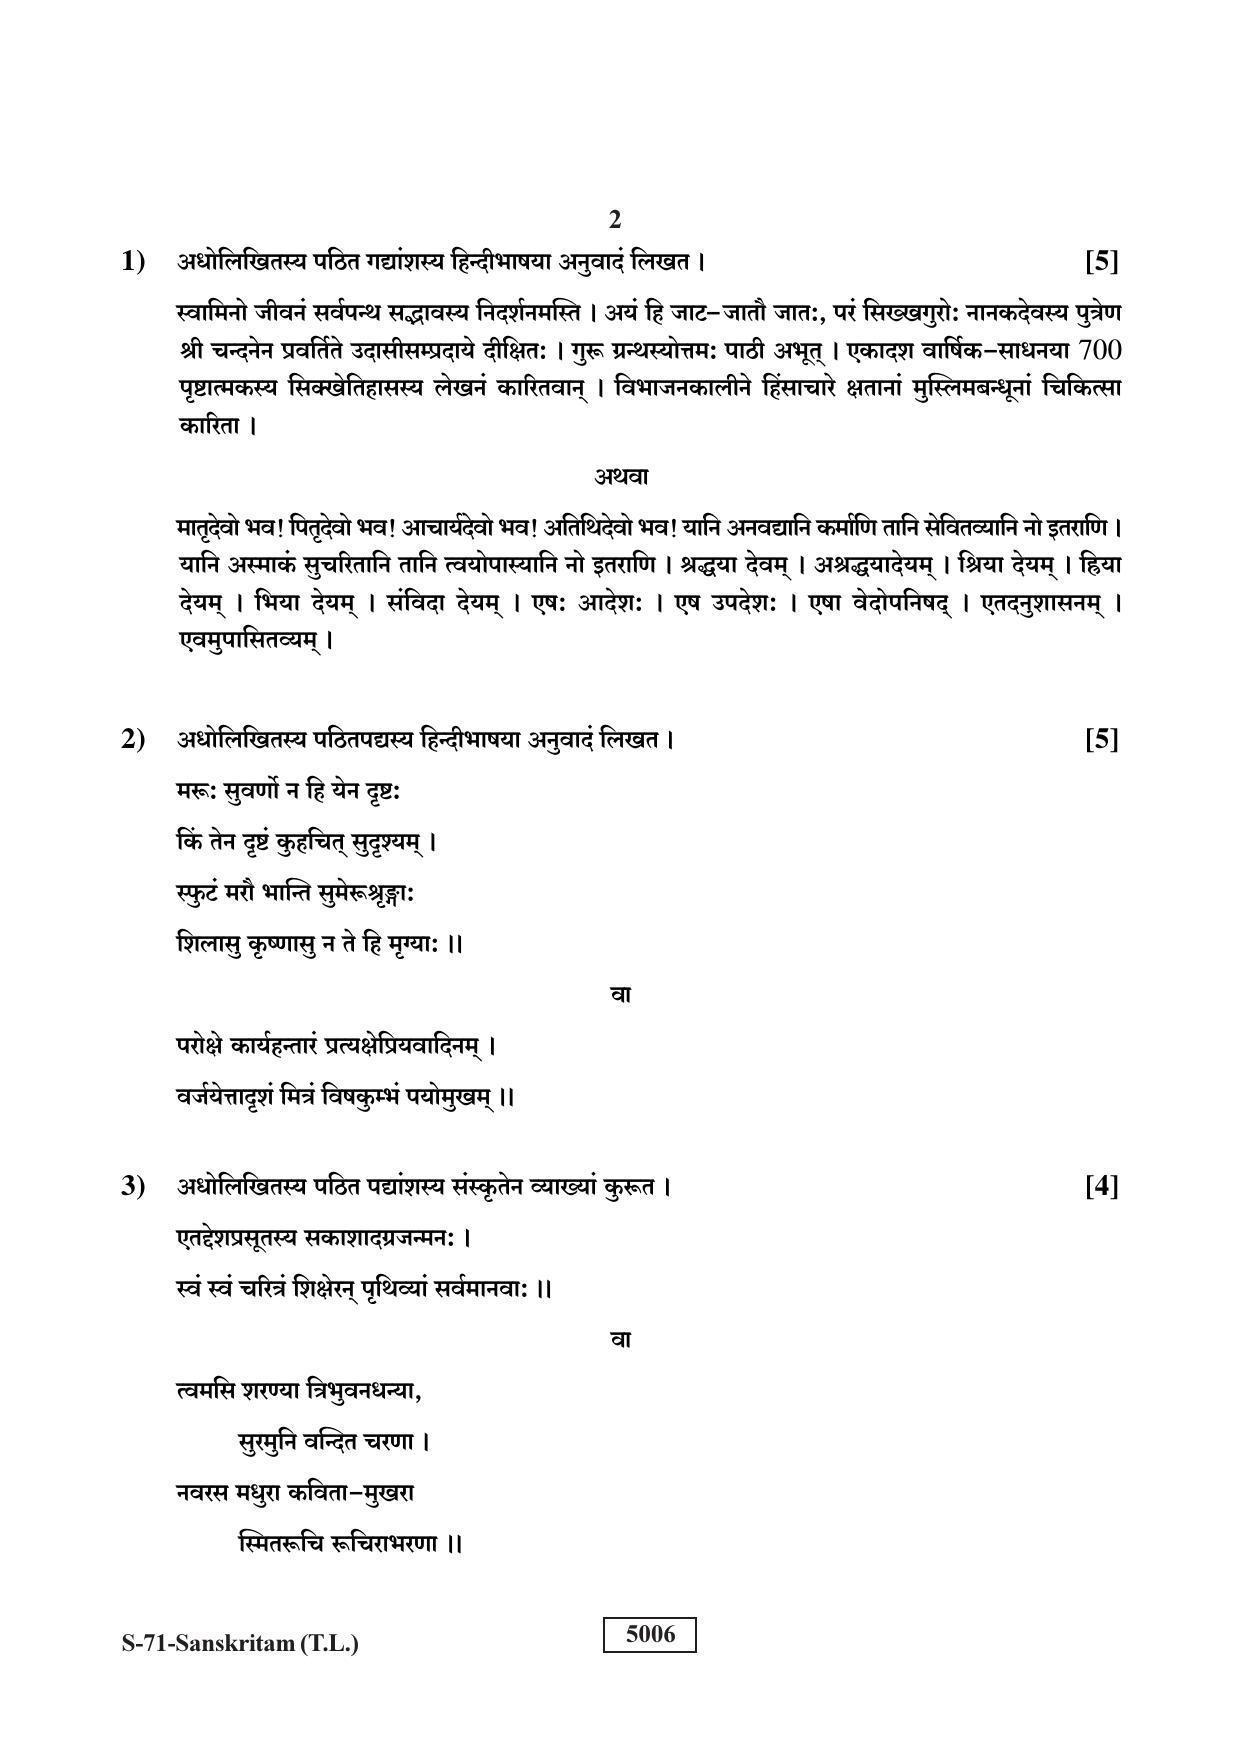 RBSE Class 10 Sanskrit (T.L.) 2019 Question Paper - Page 2